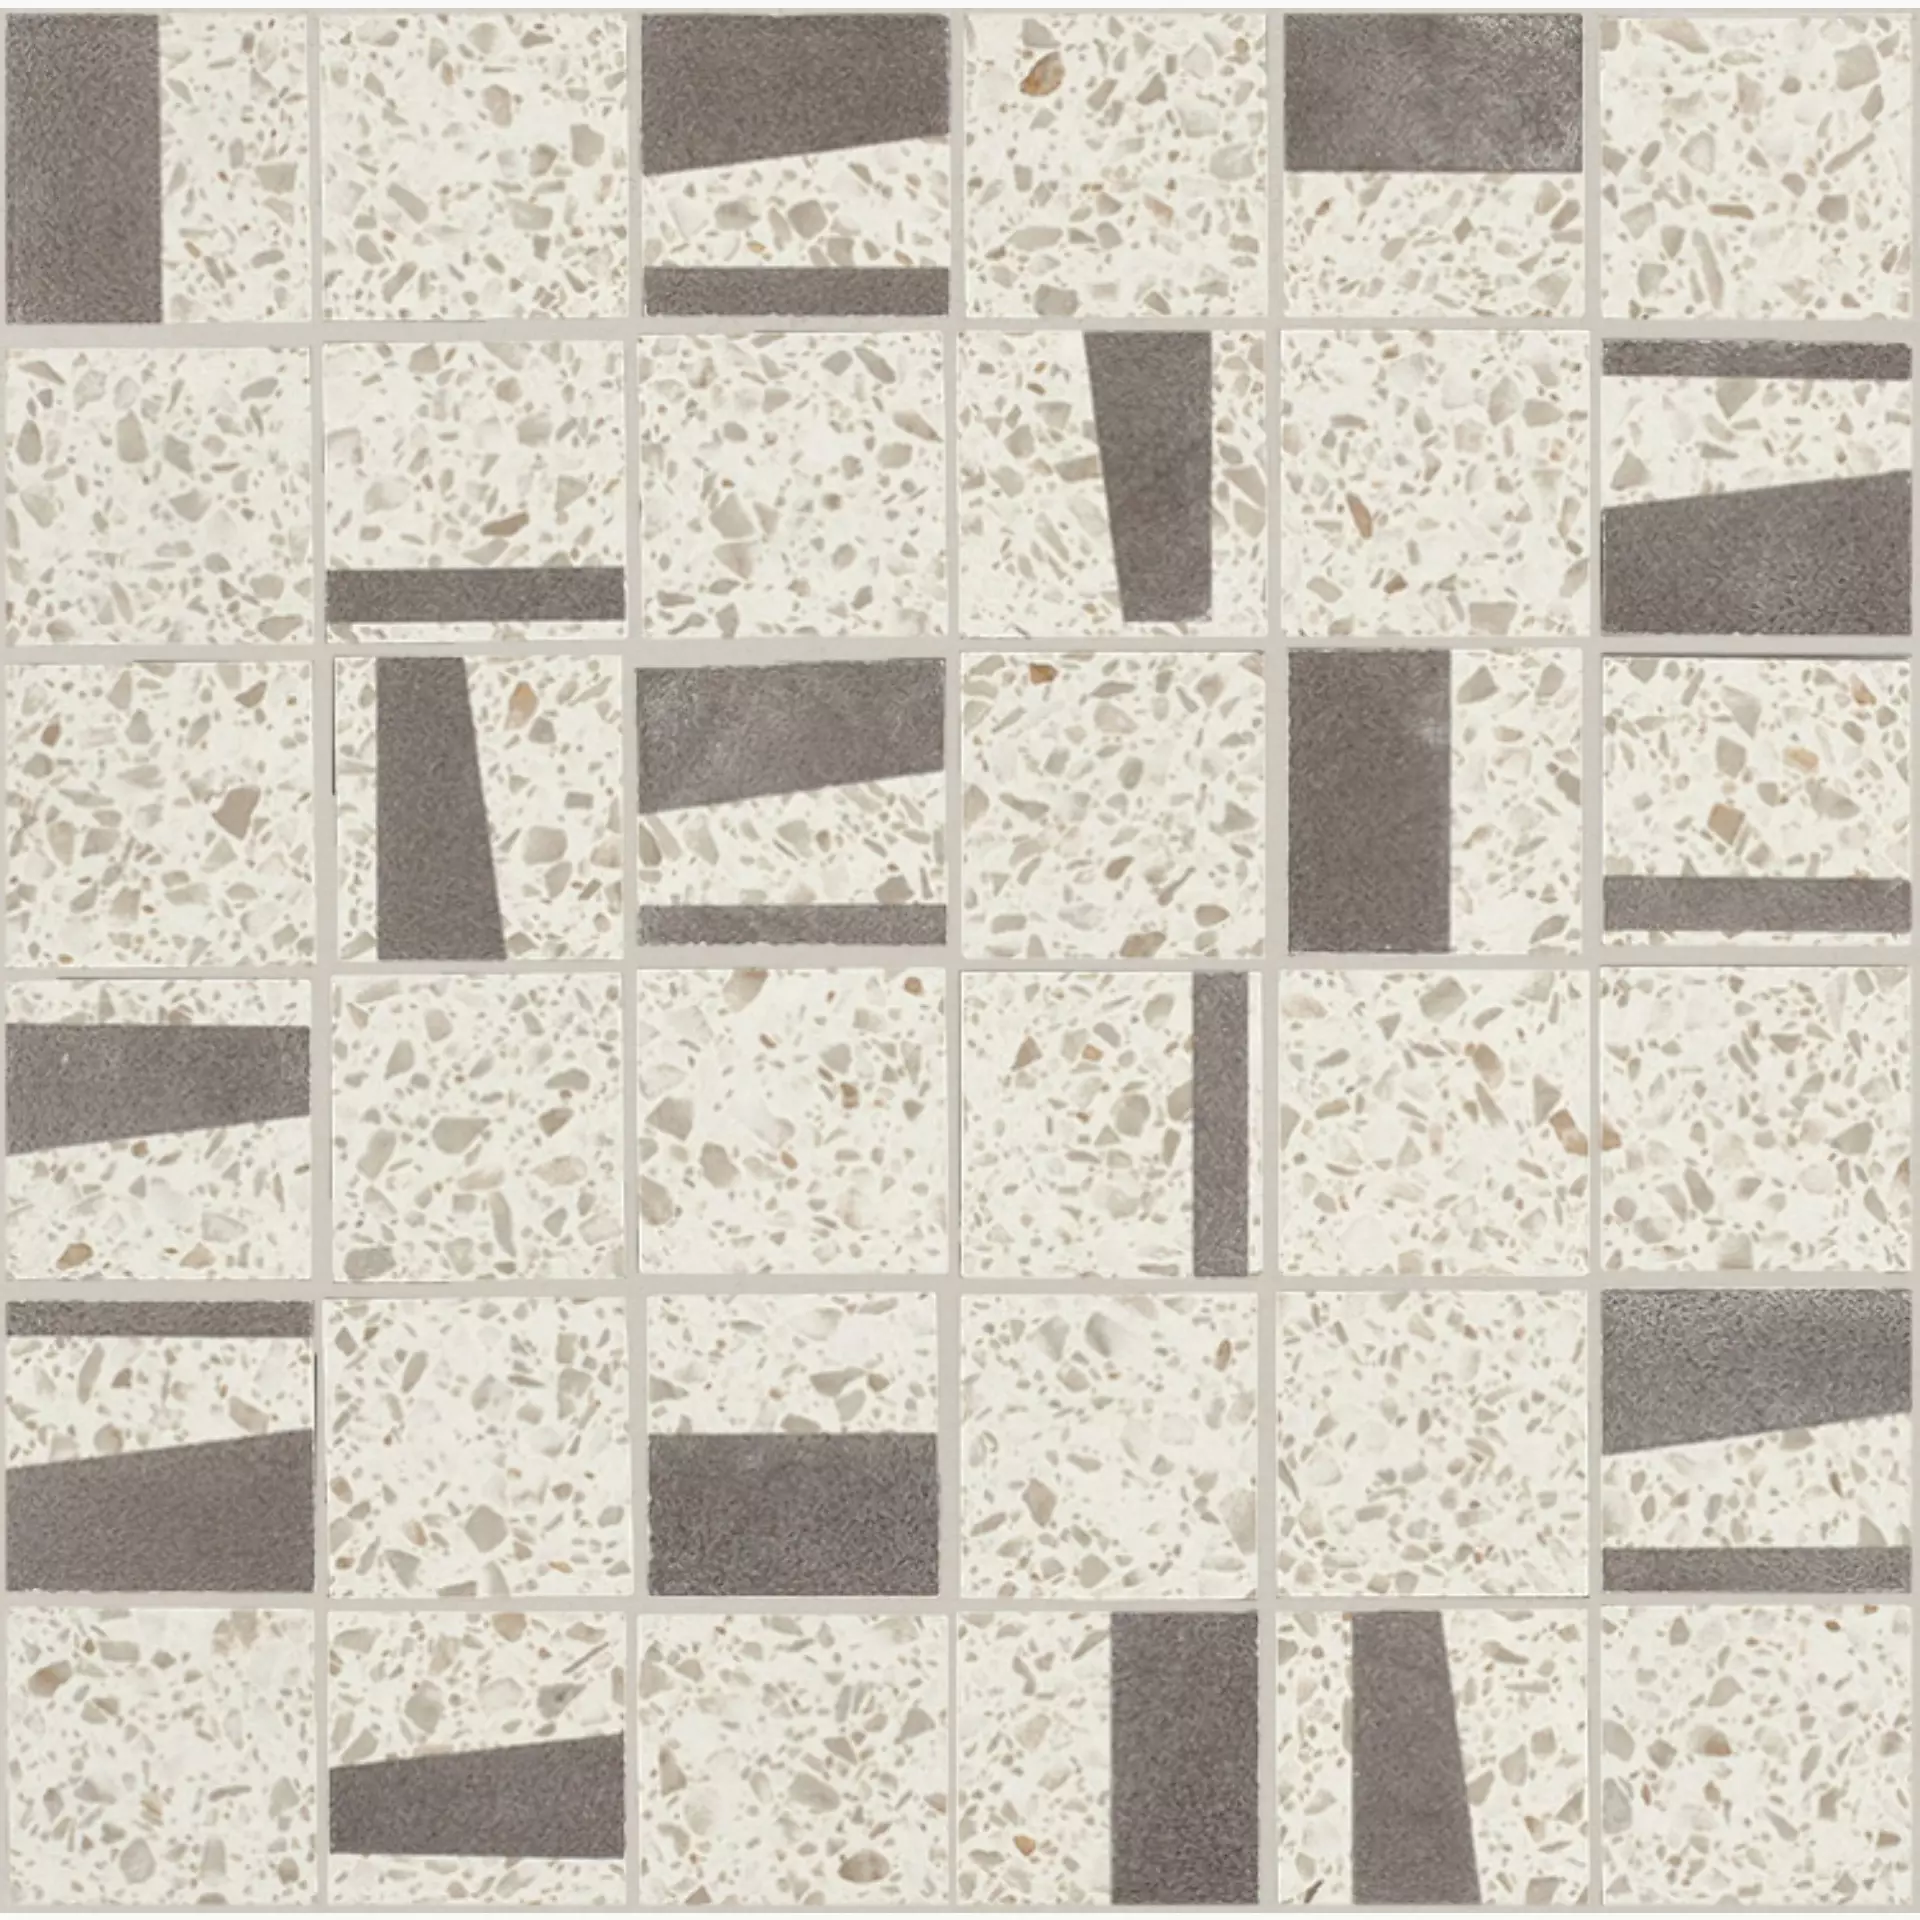 Bodenfliese,Wandfliese Marazzi Pinch Beige Naturale – Matt Beige M0KY matt natur 30x30cm Mosaik 10,5mm